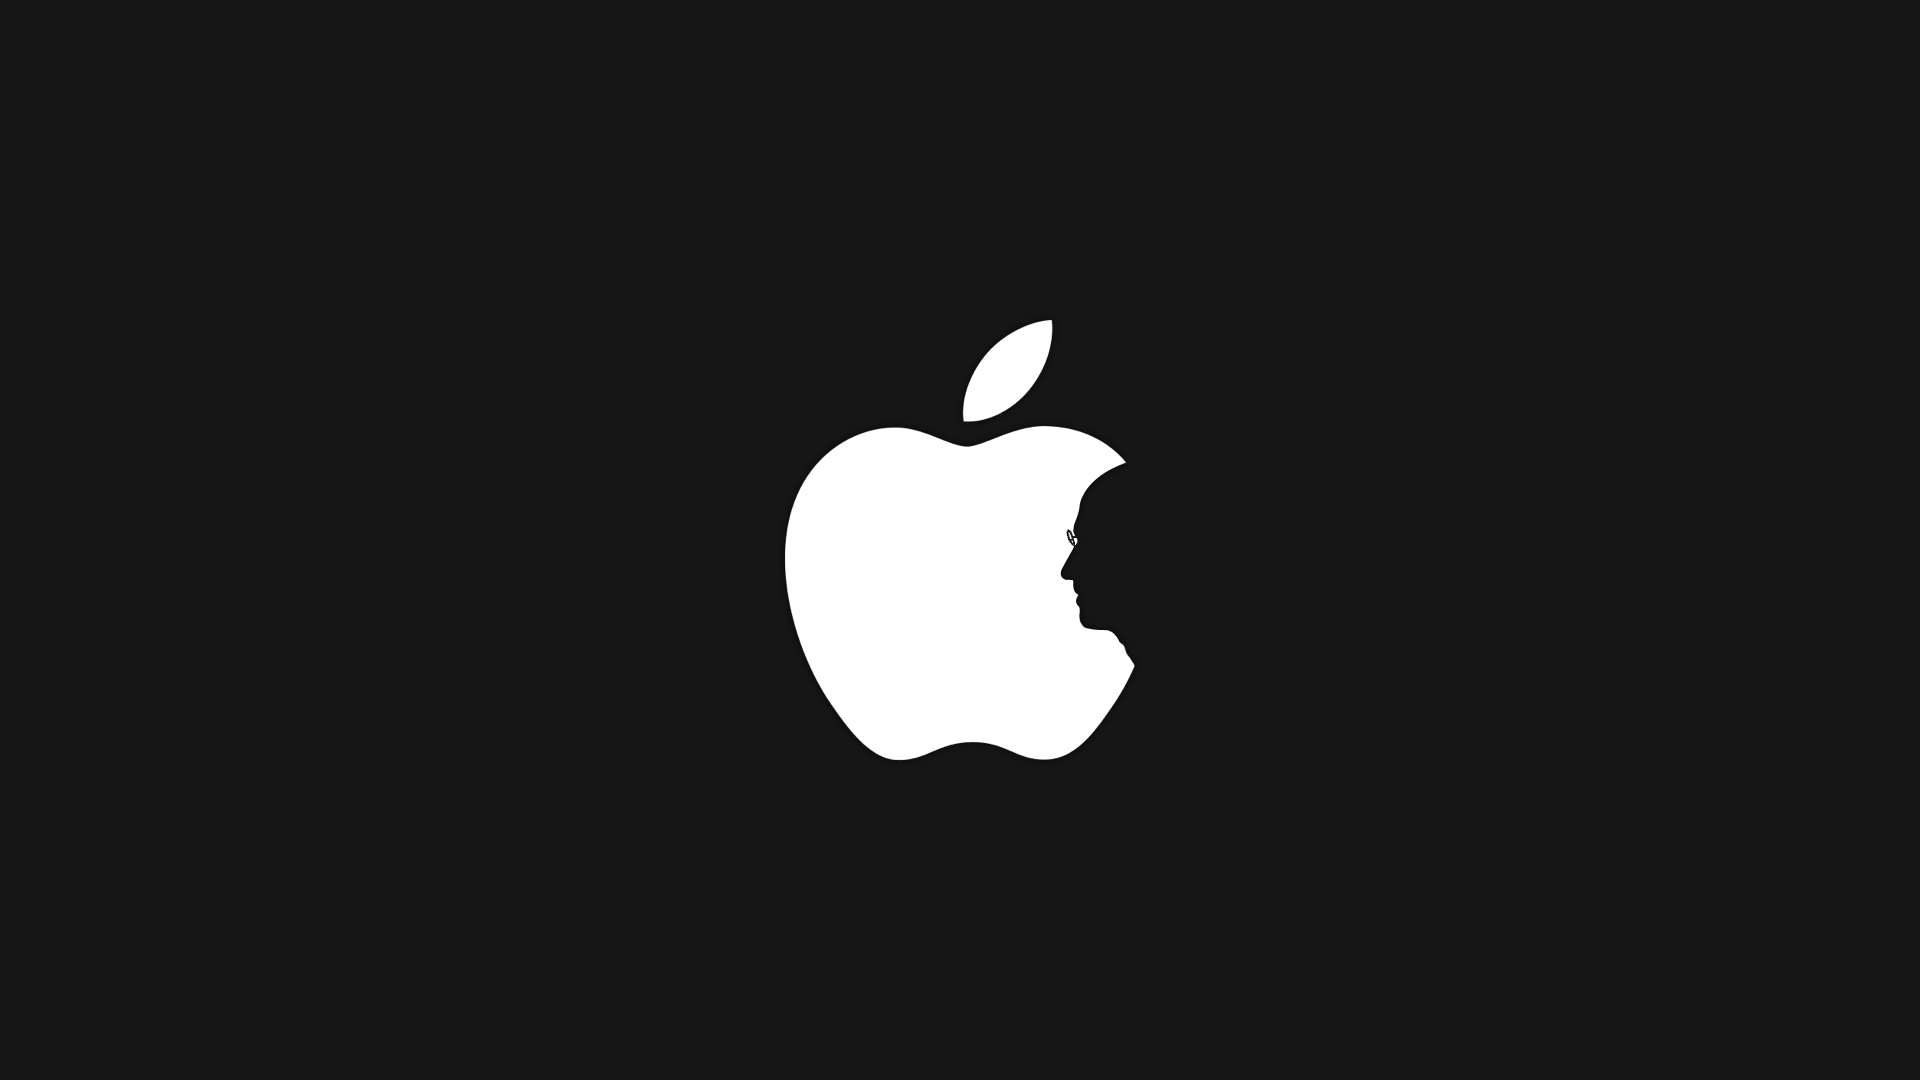 Steve Jobs Apple Silhouette